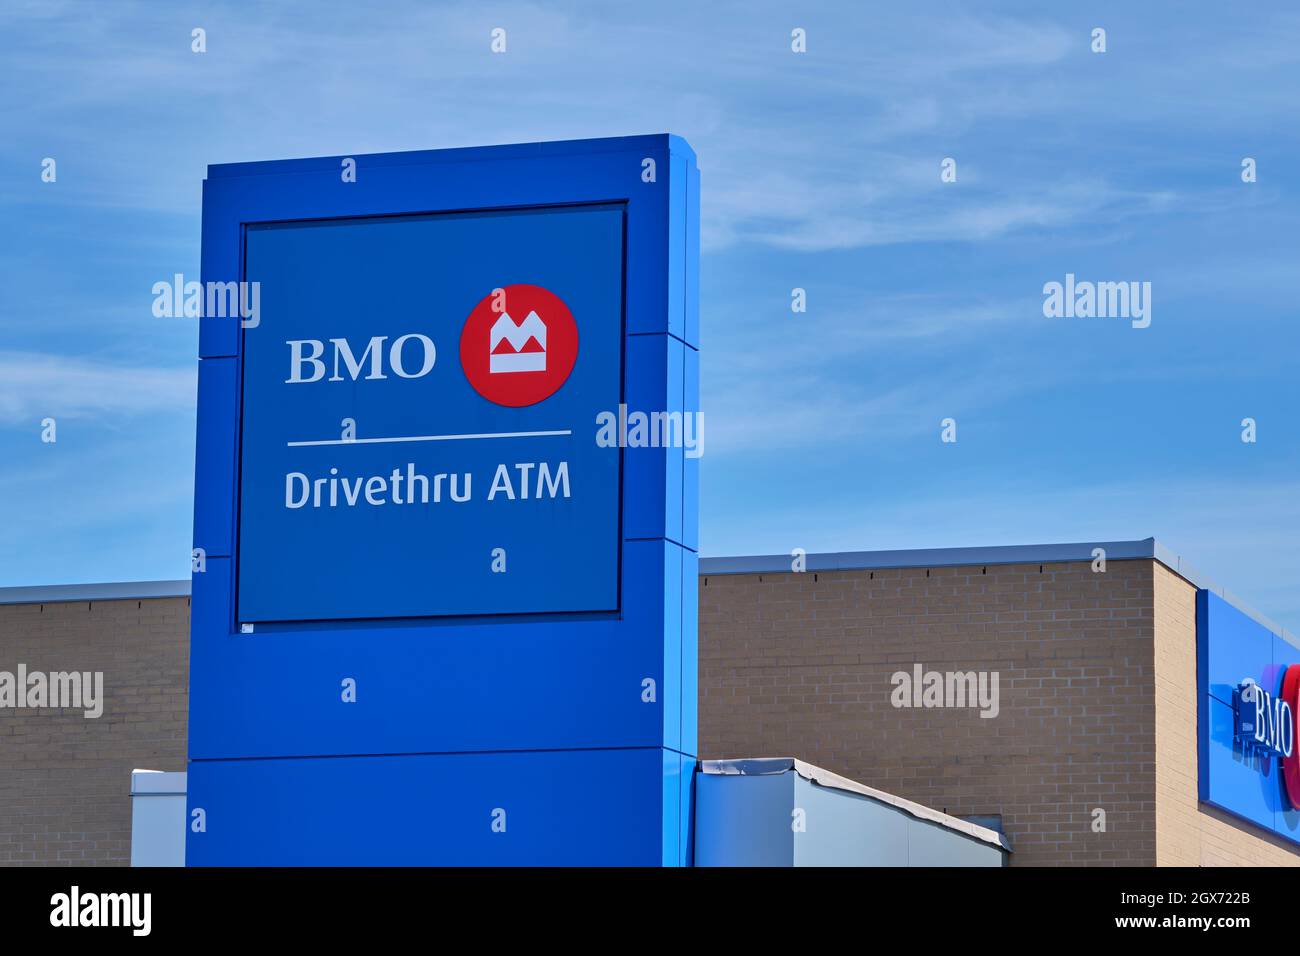 El Banco de Montreal o BMO es uno de los principales bancos de Canadá. Foto de stock